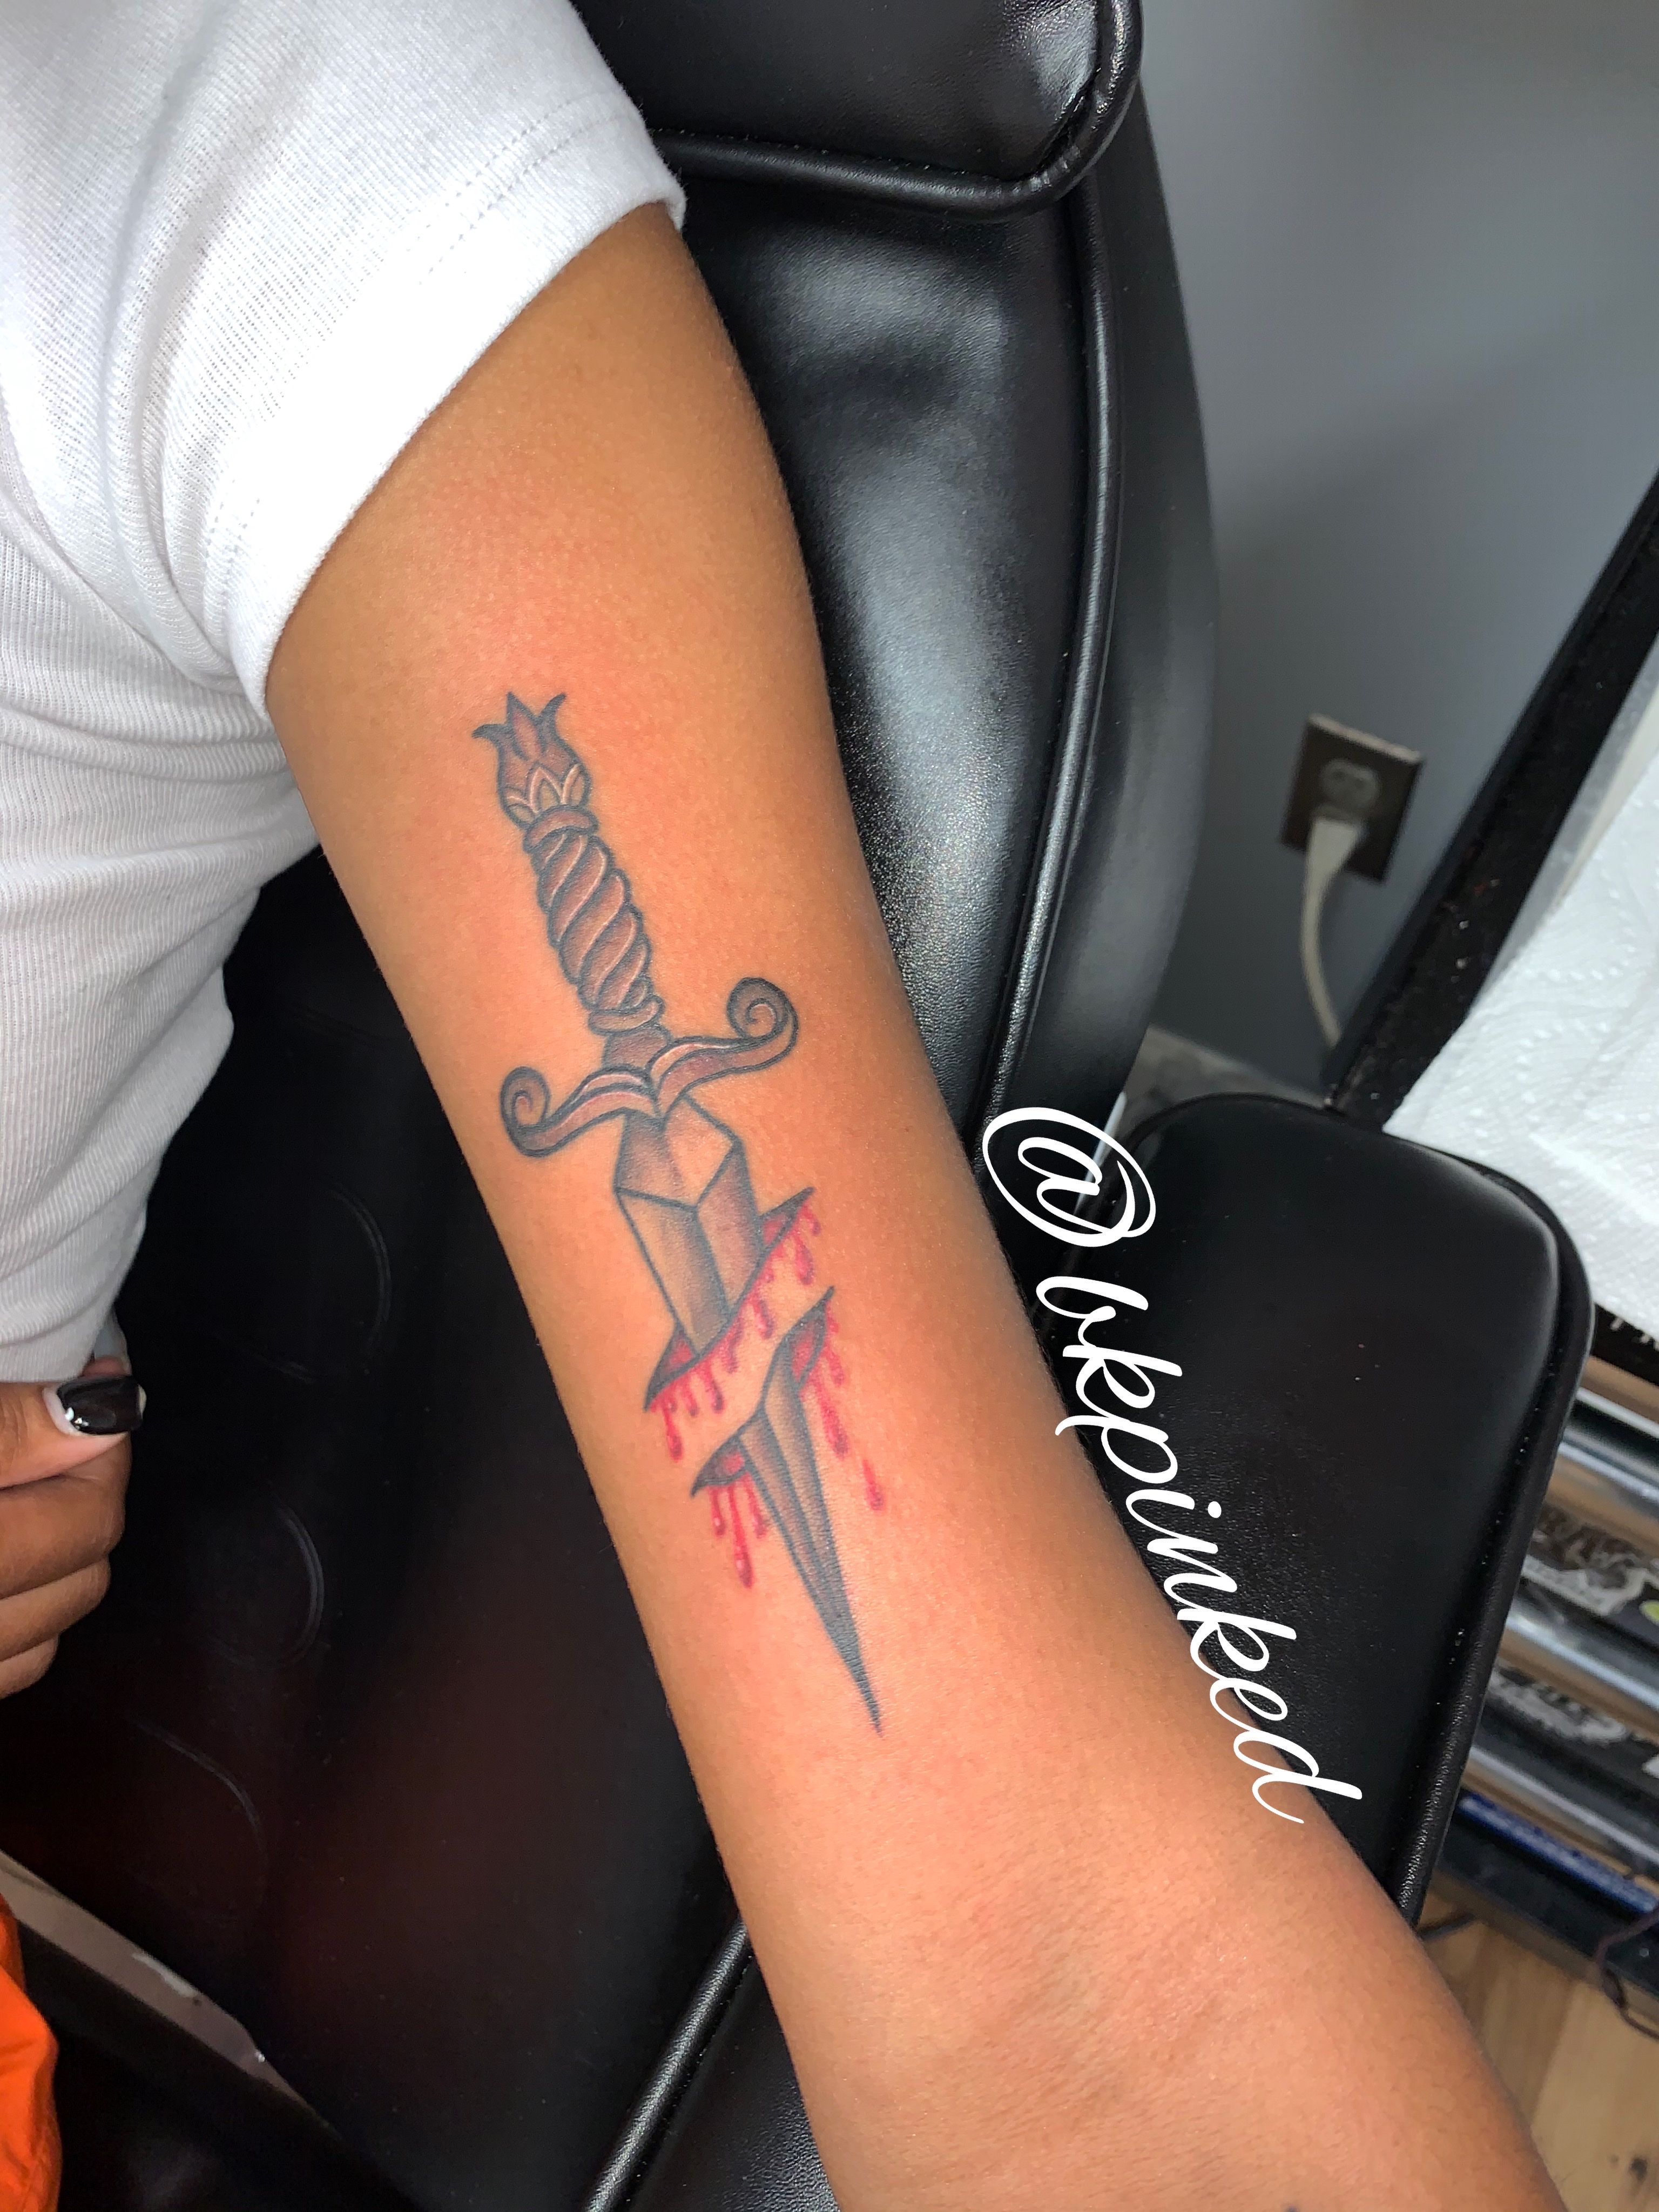 Tattoo uploaded by bkppowell1 • Tattoodo